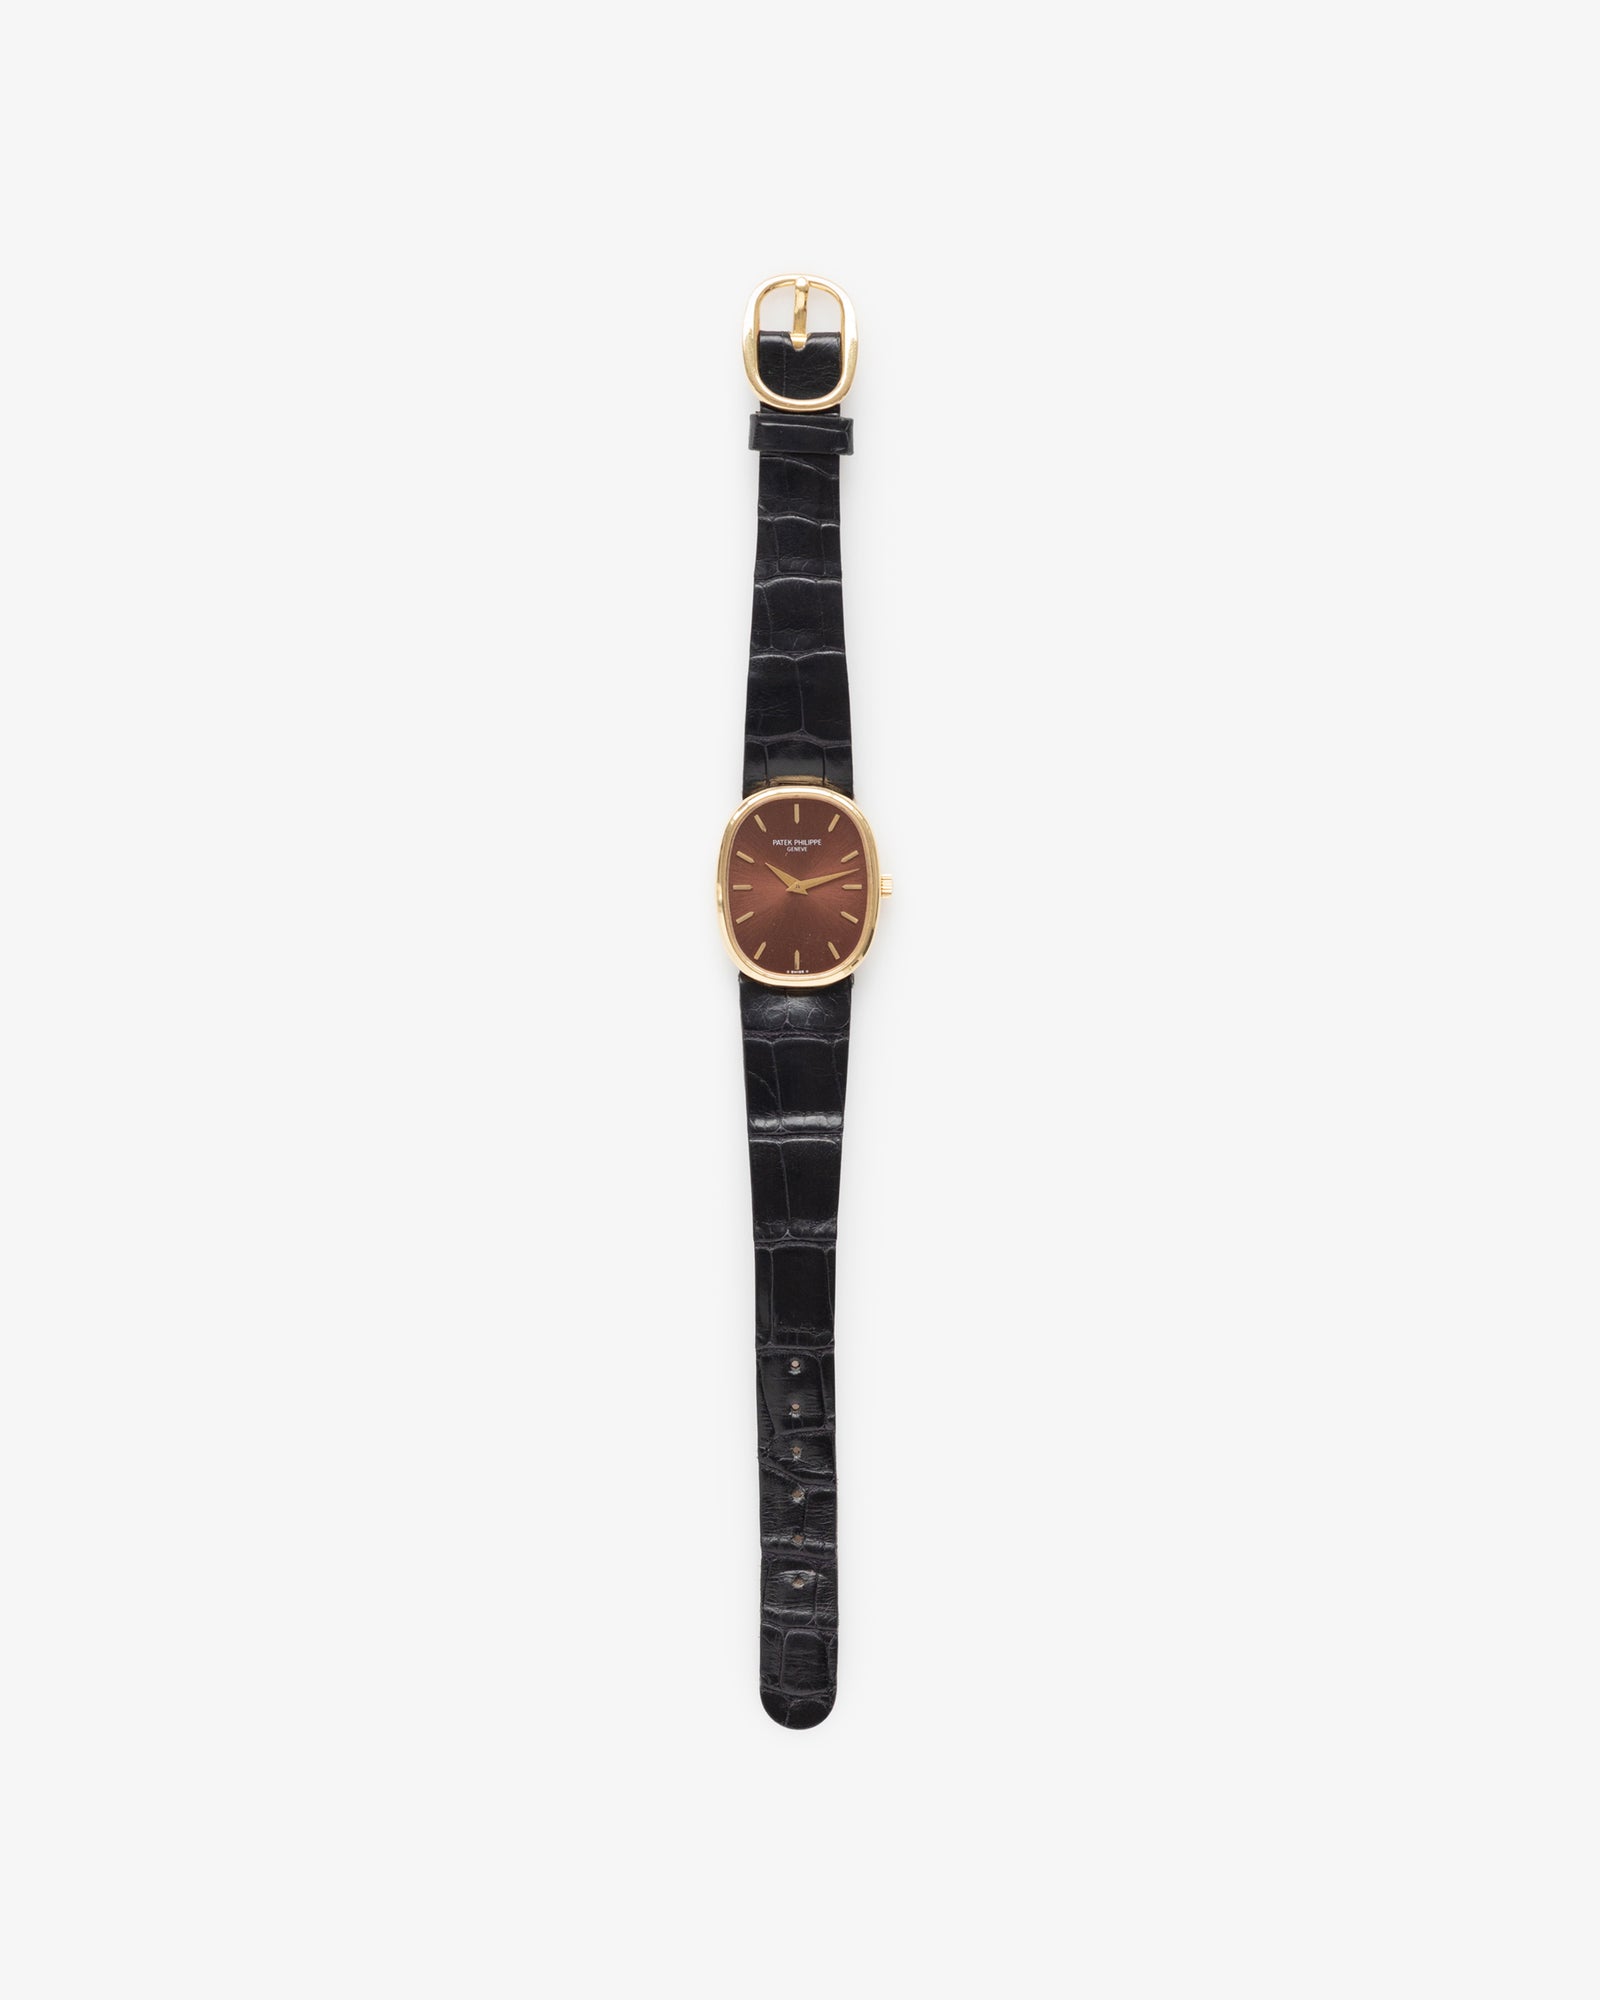 Vintage Patek Philippe Golden Ellipse Watch